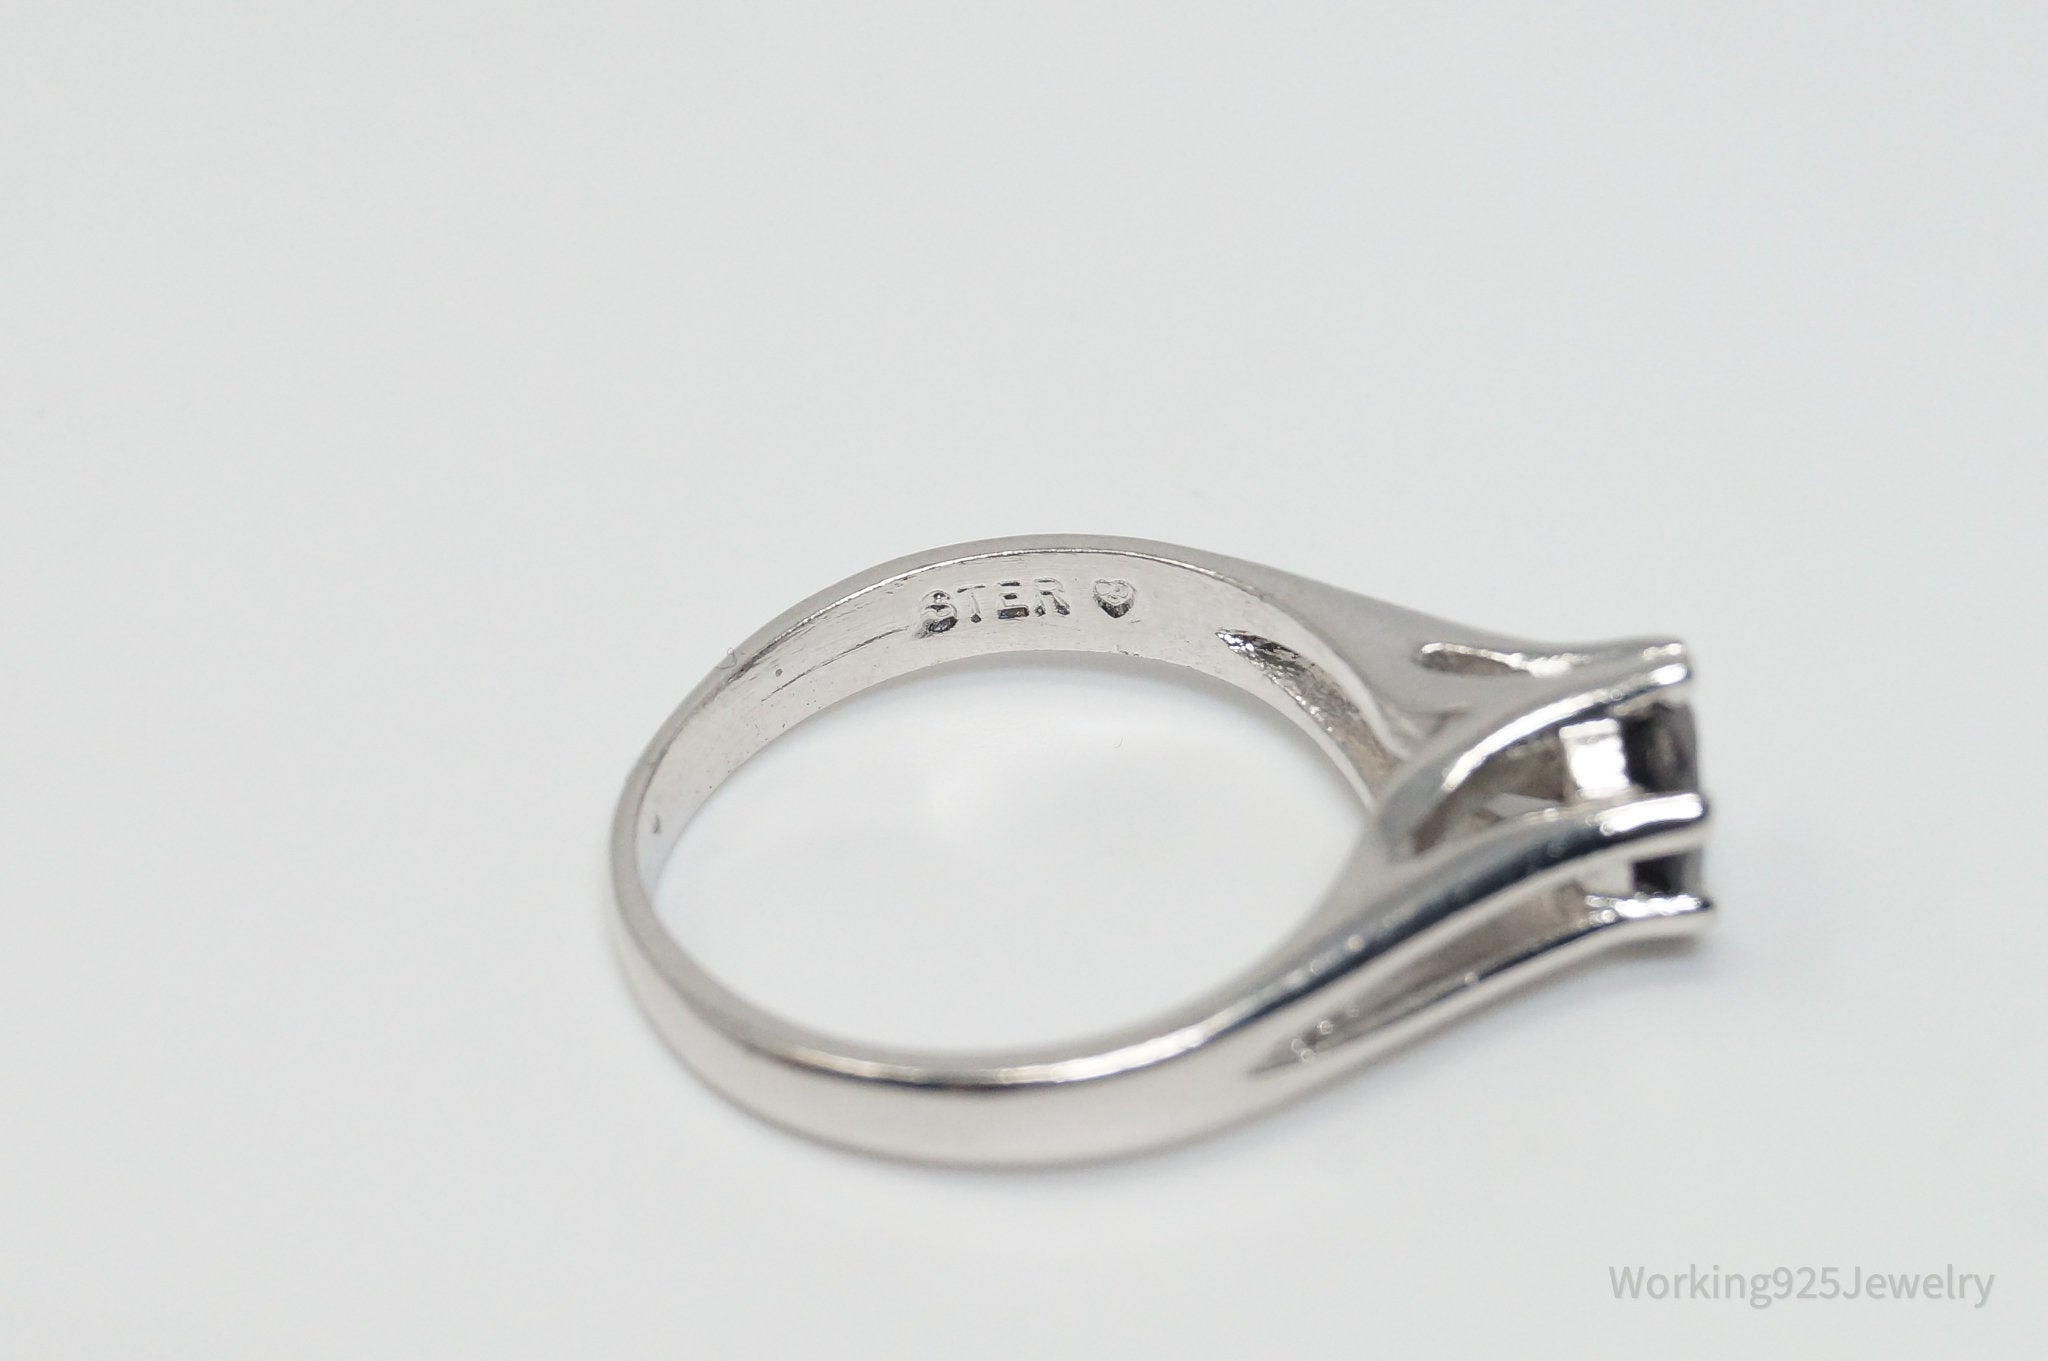 Vintage Art Deco Garnet Sterling Silver Ring - Size 7.25